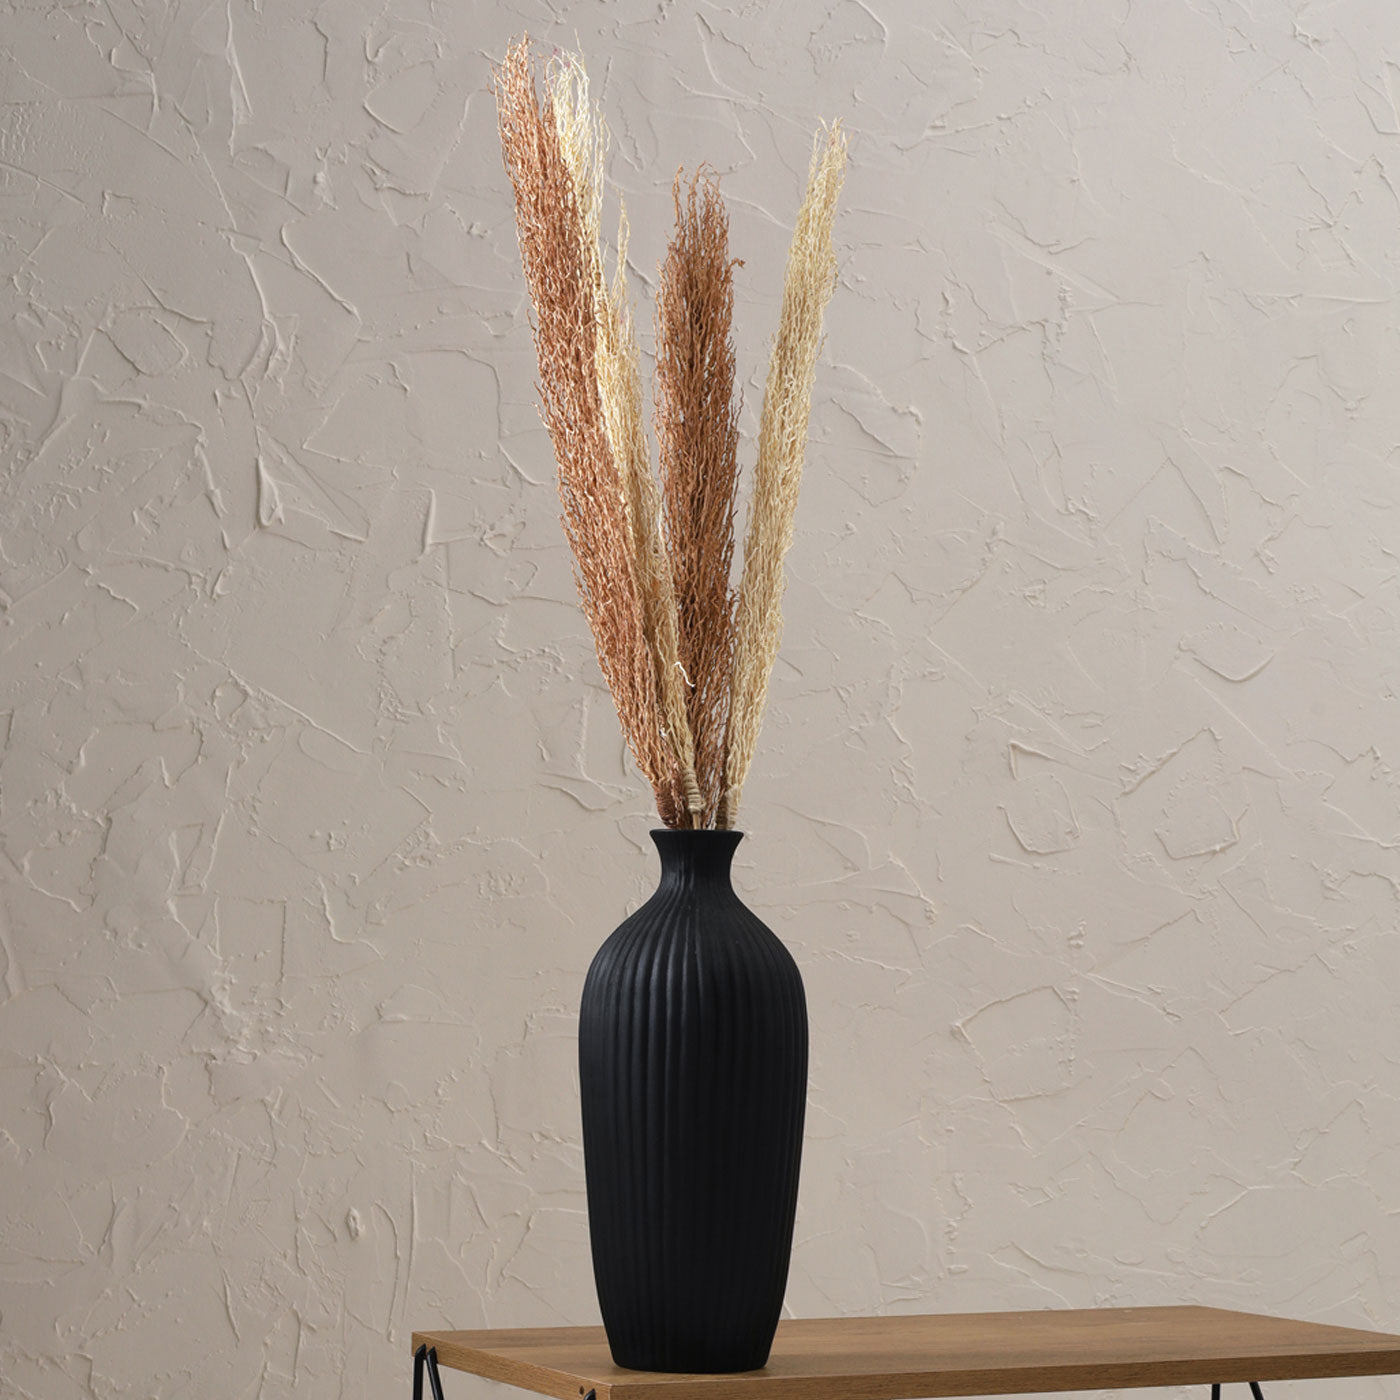 Saroi Vase Black 12 inch